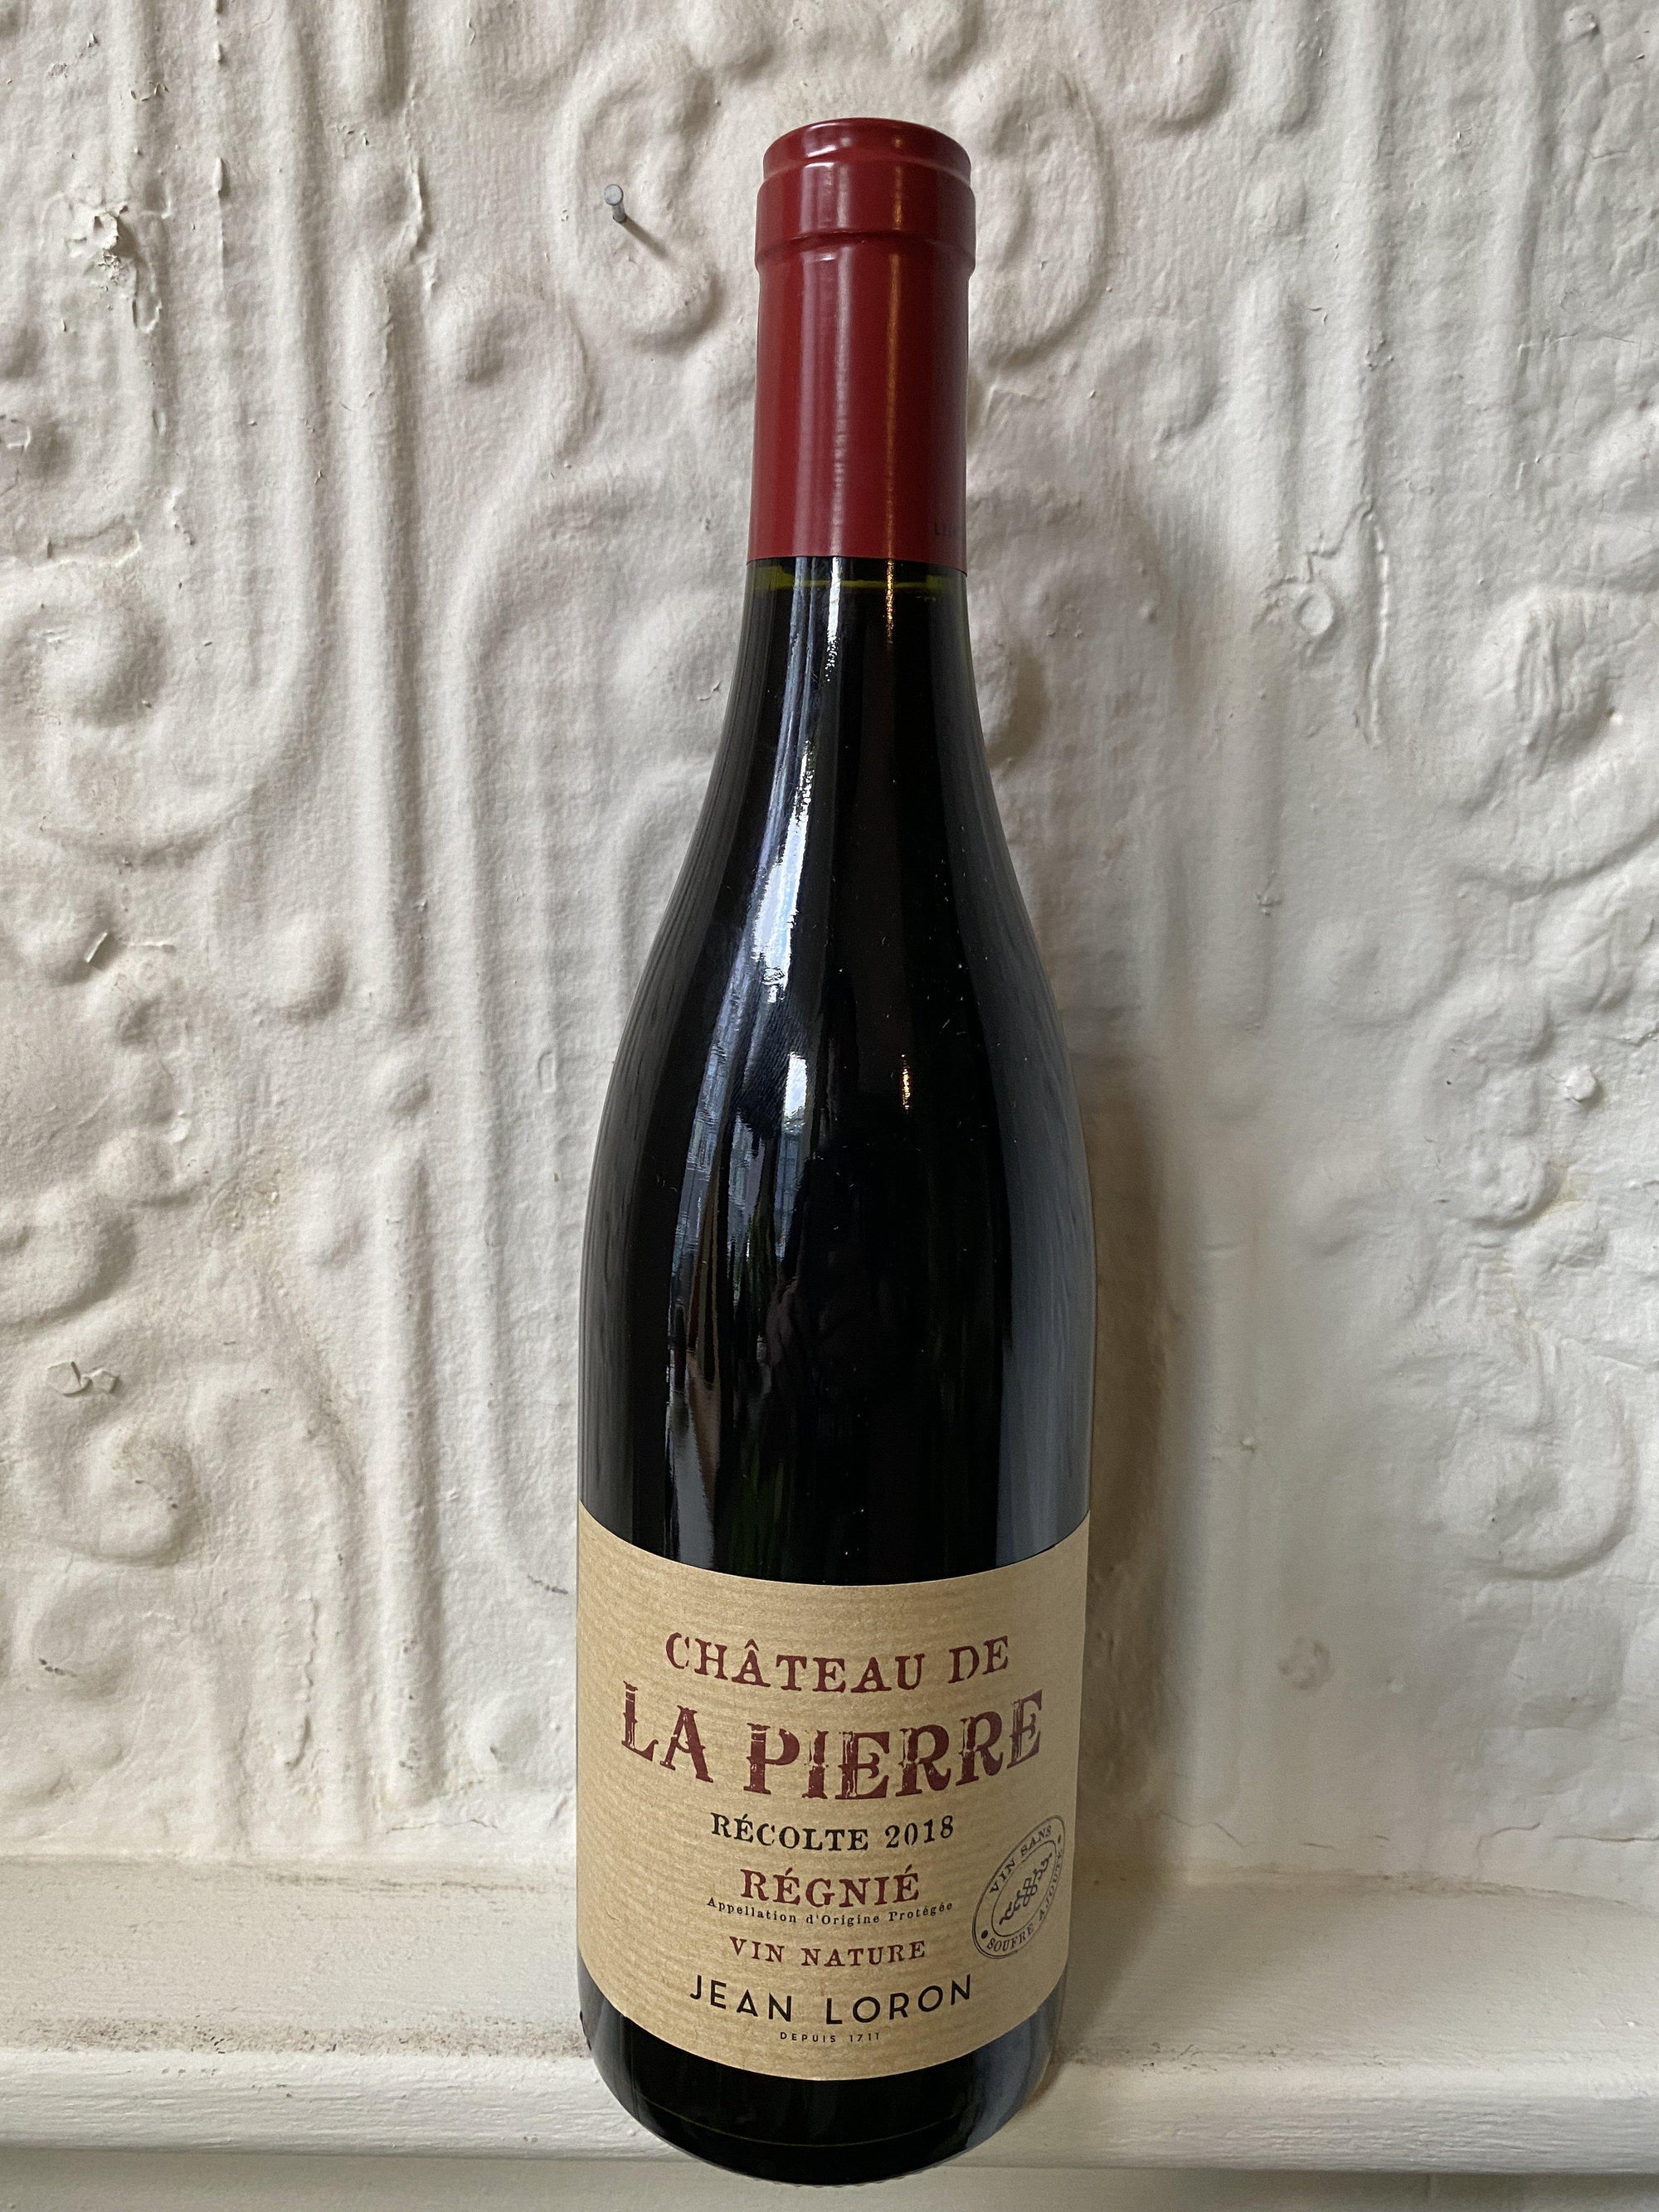 Regnie Sans Soufre, Chateau de la Pierre 2018 (Beaujolais, France)-Wine-Bibber & Bell